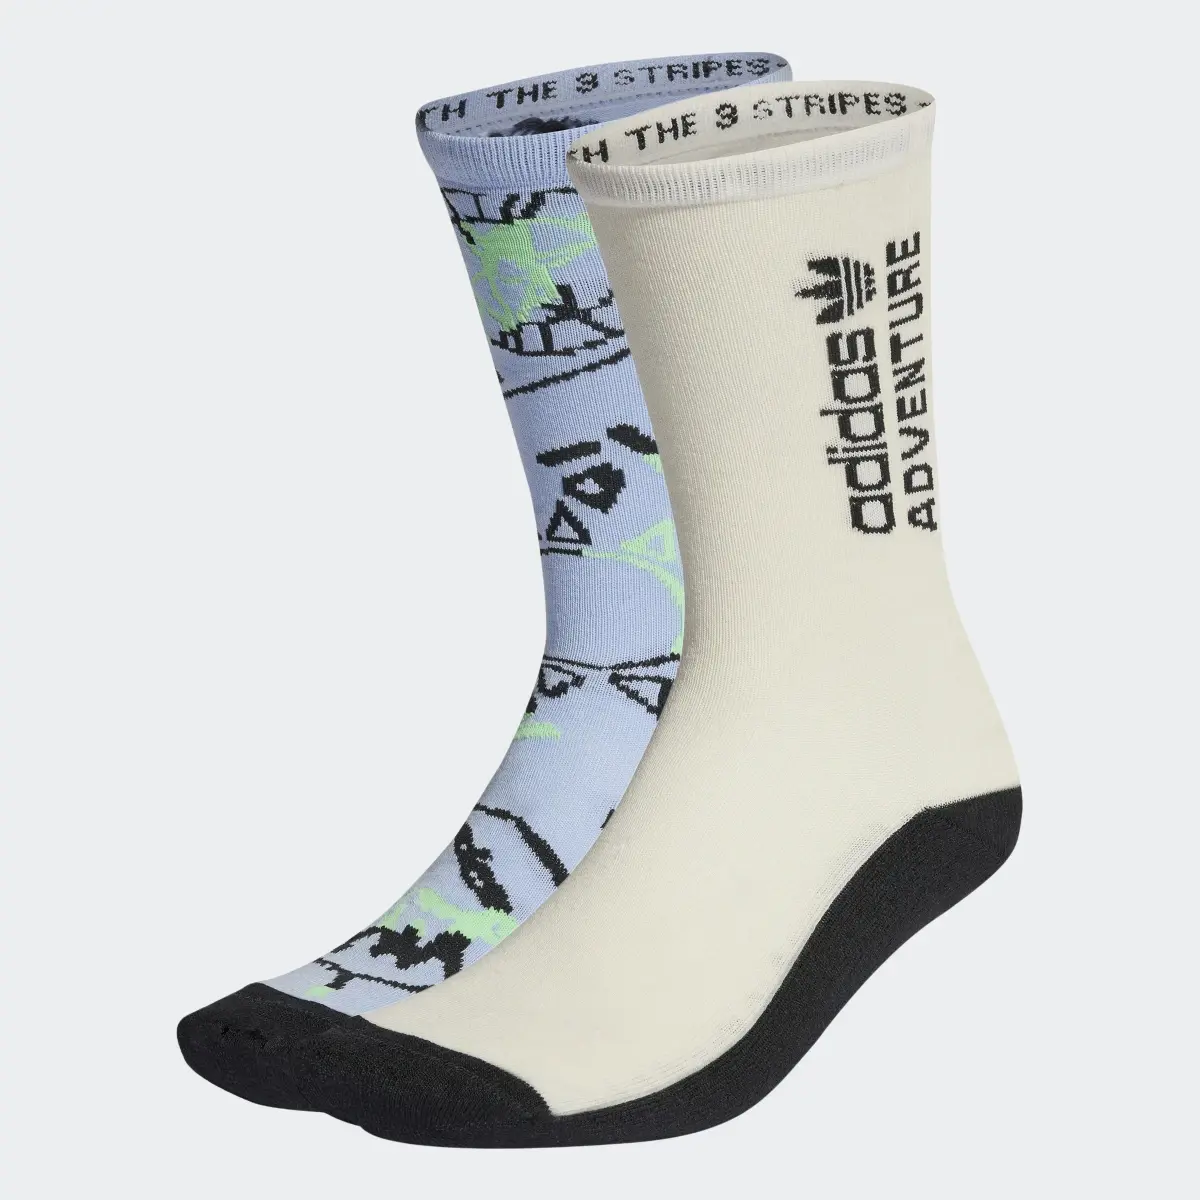 Adidas Adventure Socks 2 Pairs. 1